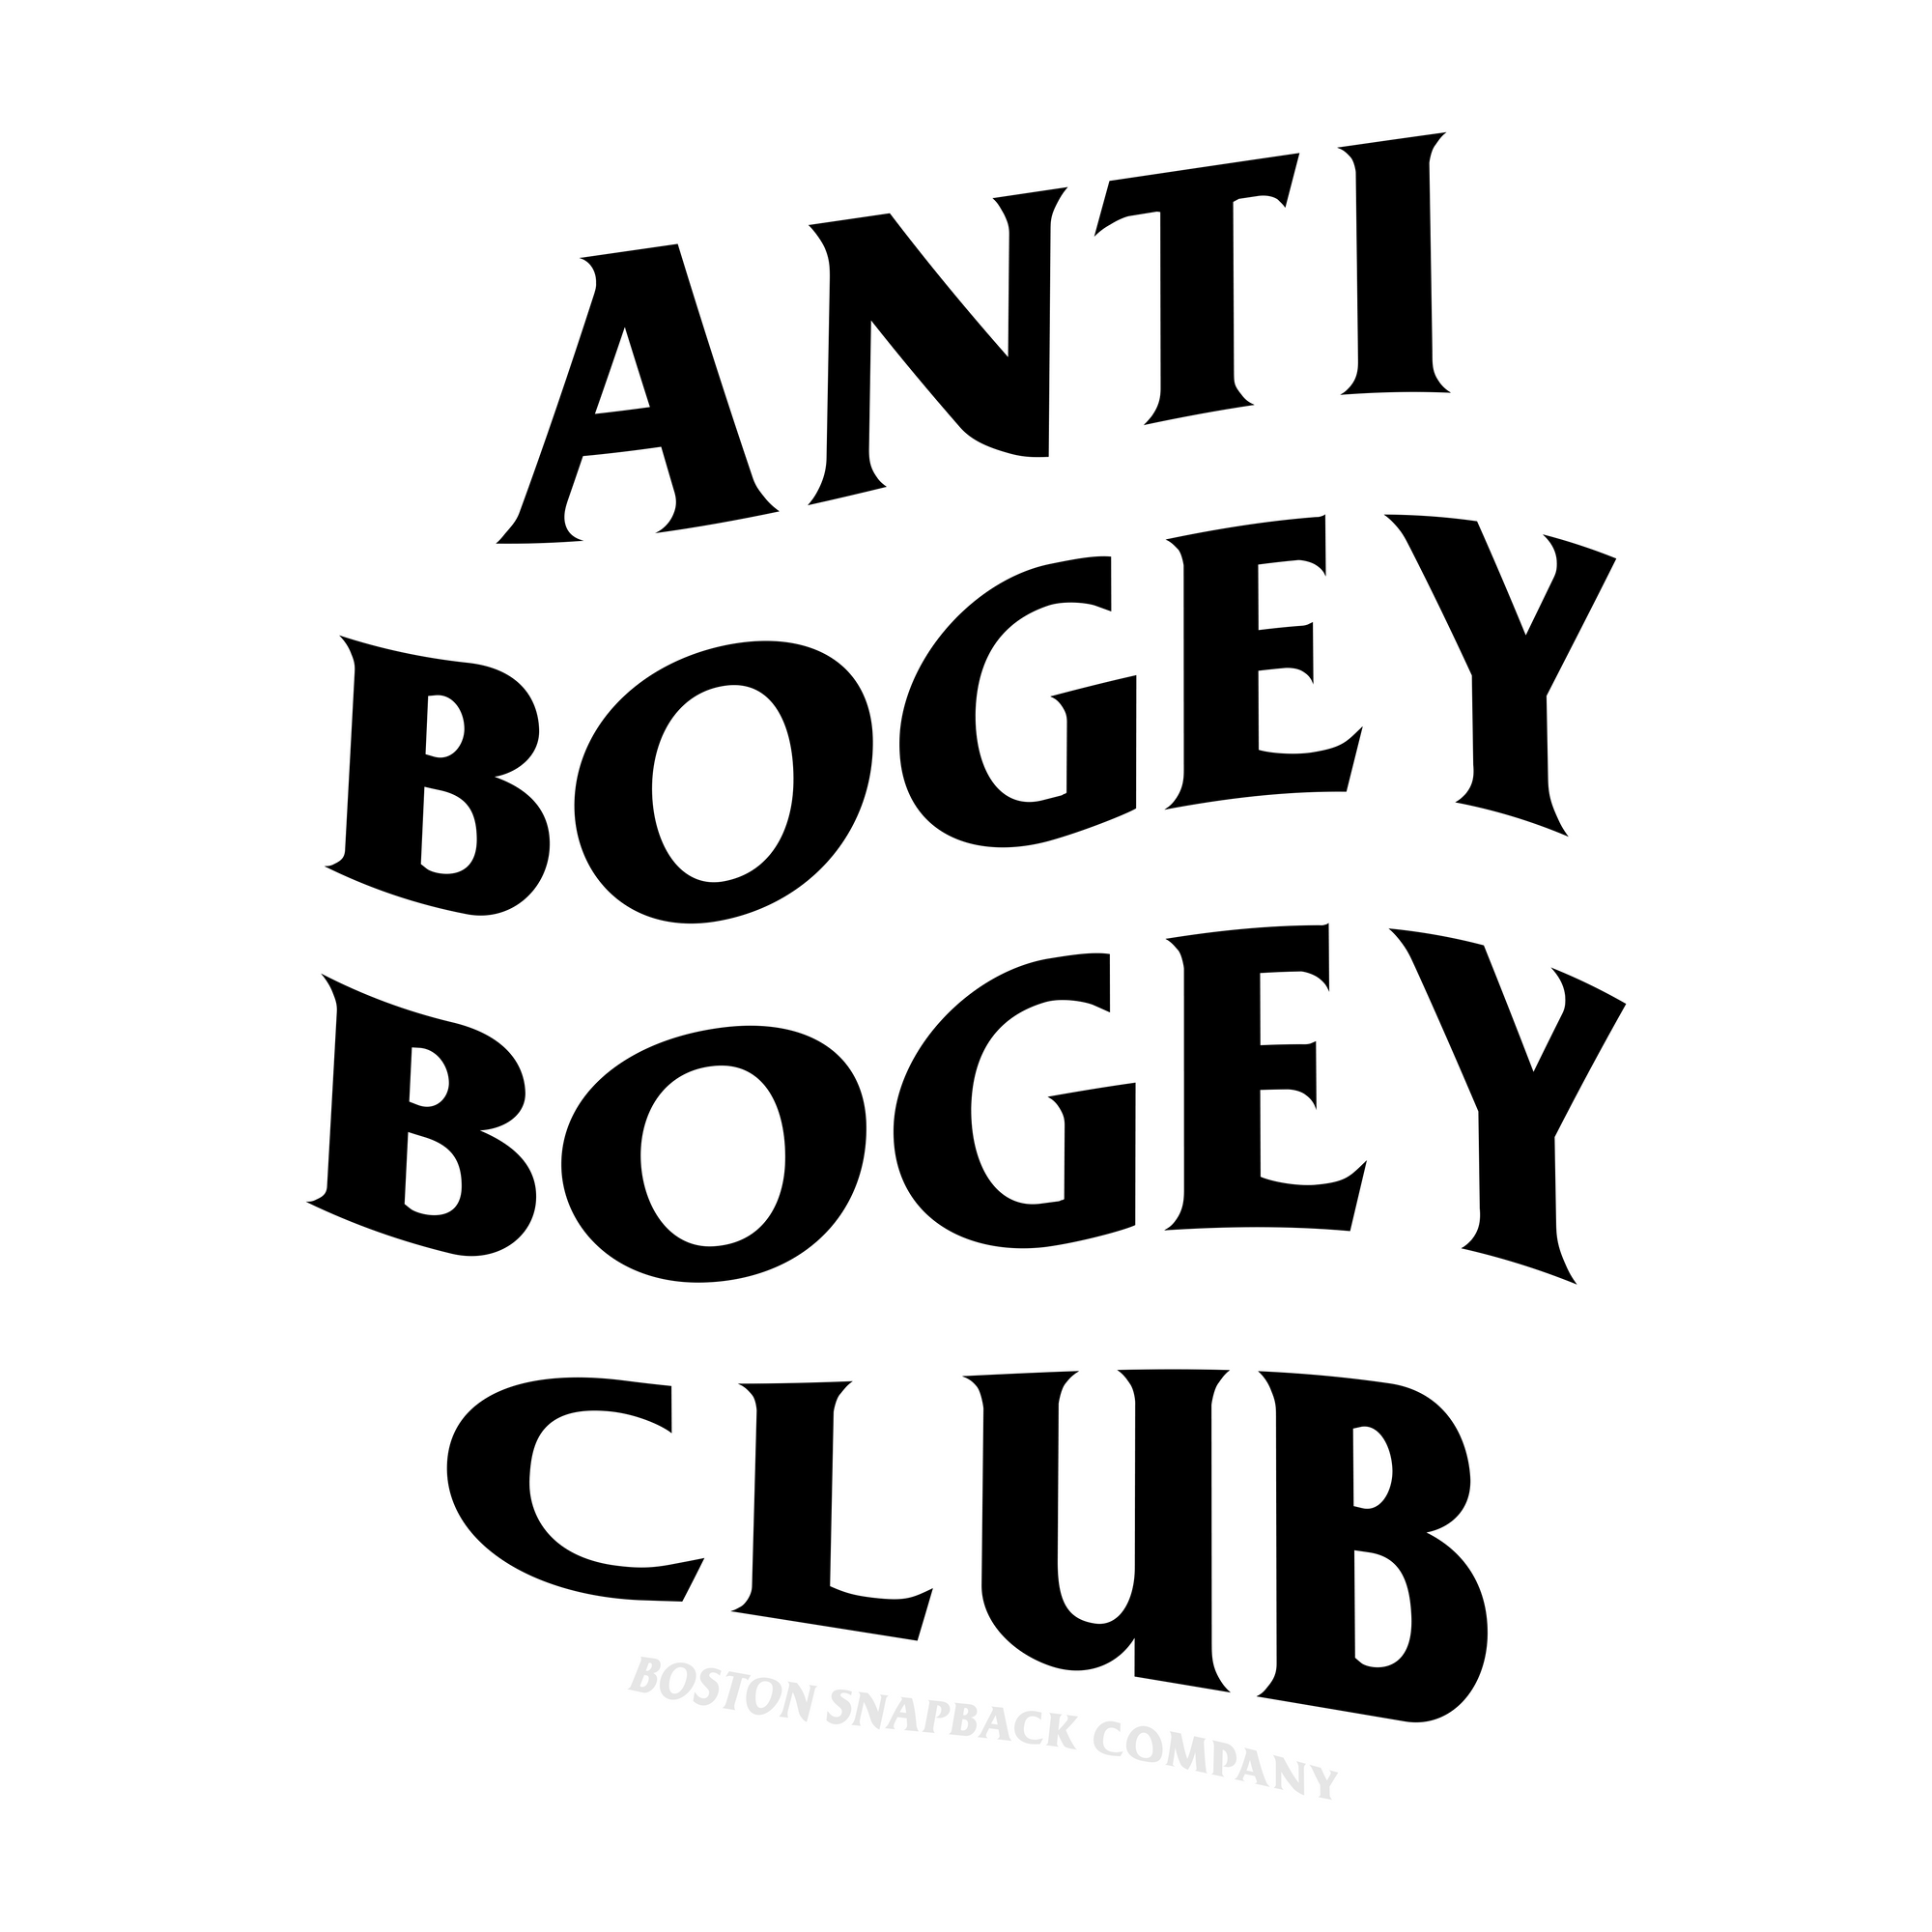 Anti Bogey Bogey Club Sticker - Boston Snapback Company